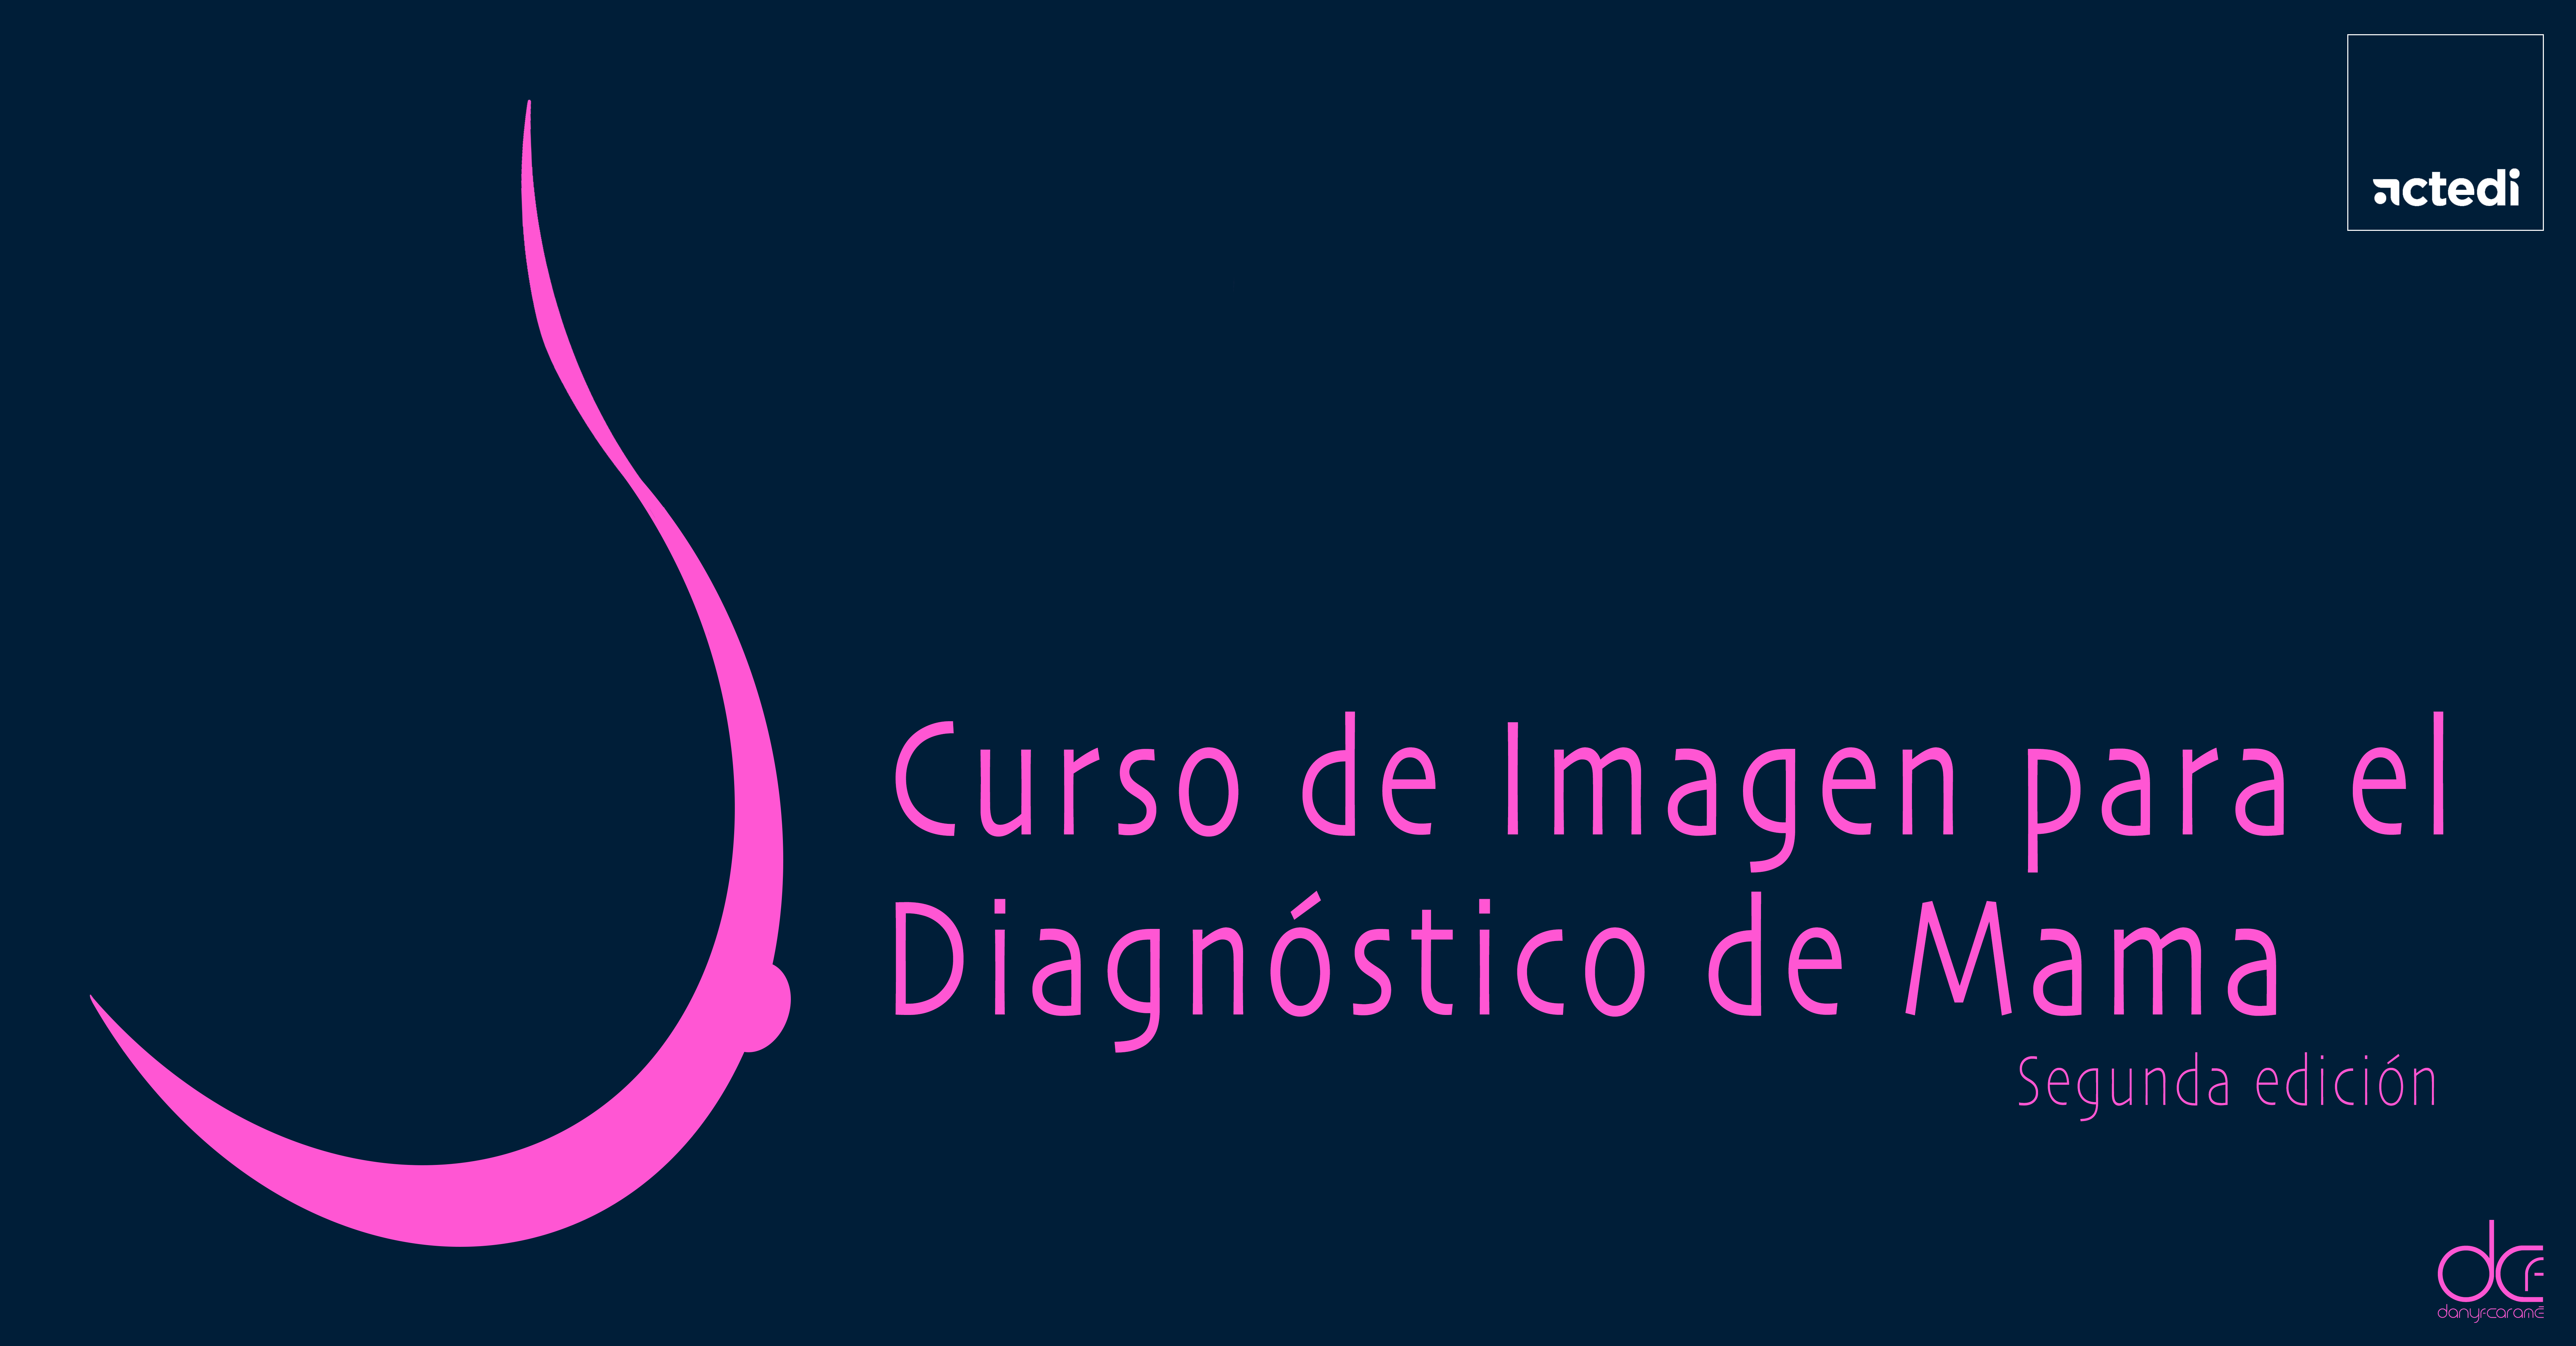 2022 - Curso de Imagen para el Diagnóstico de Mama. 2ª edición. 25 plazas.